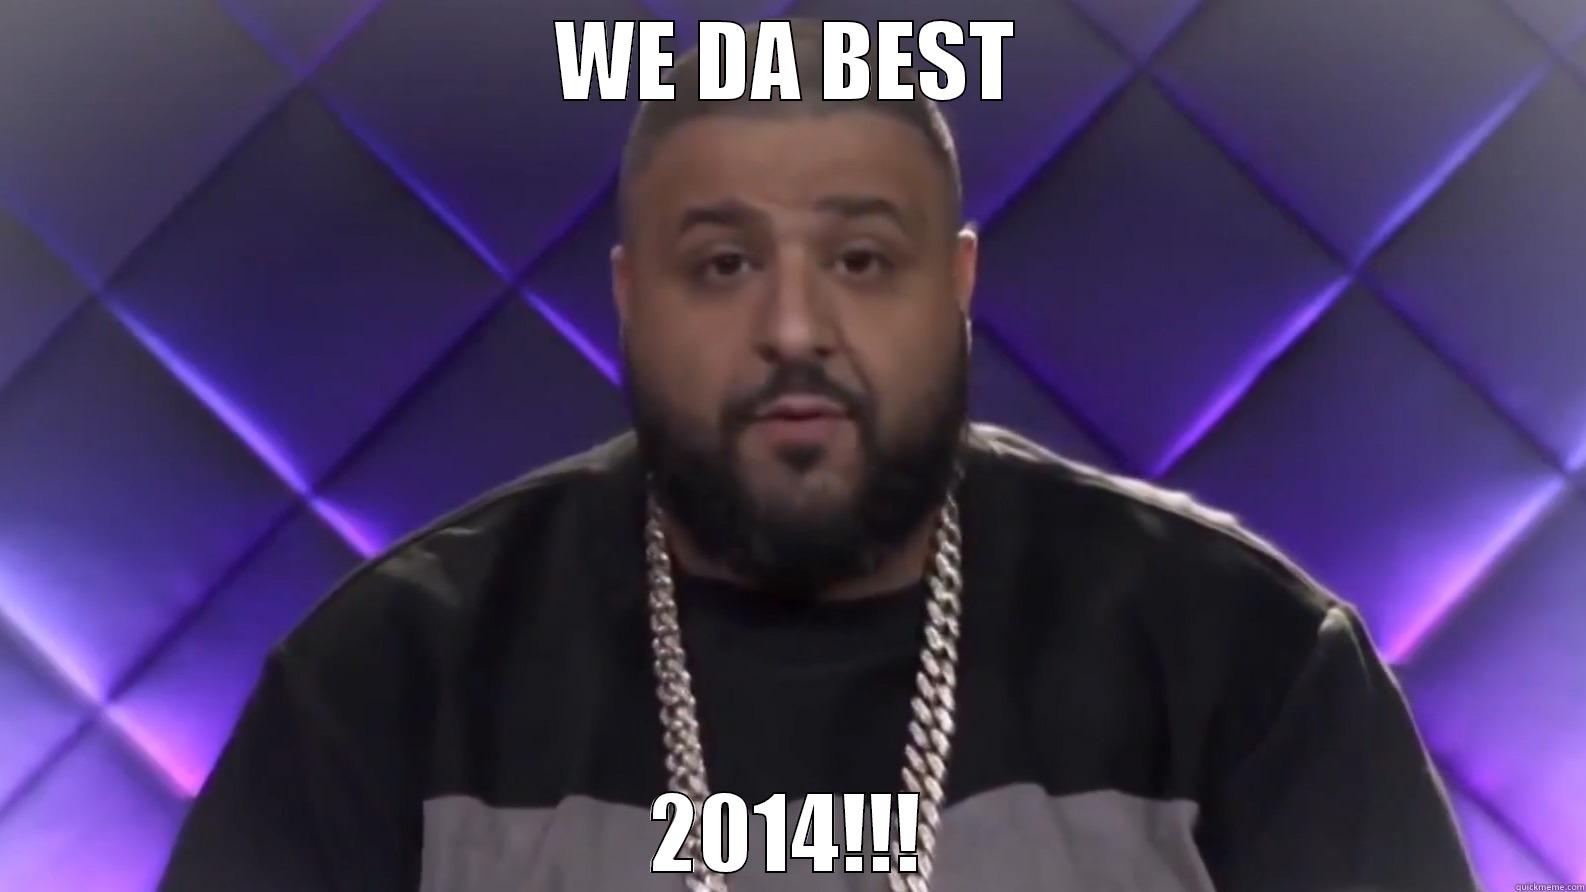 2014 we da best - WE DA BEST 2014!!! Misc